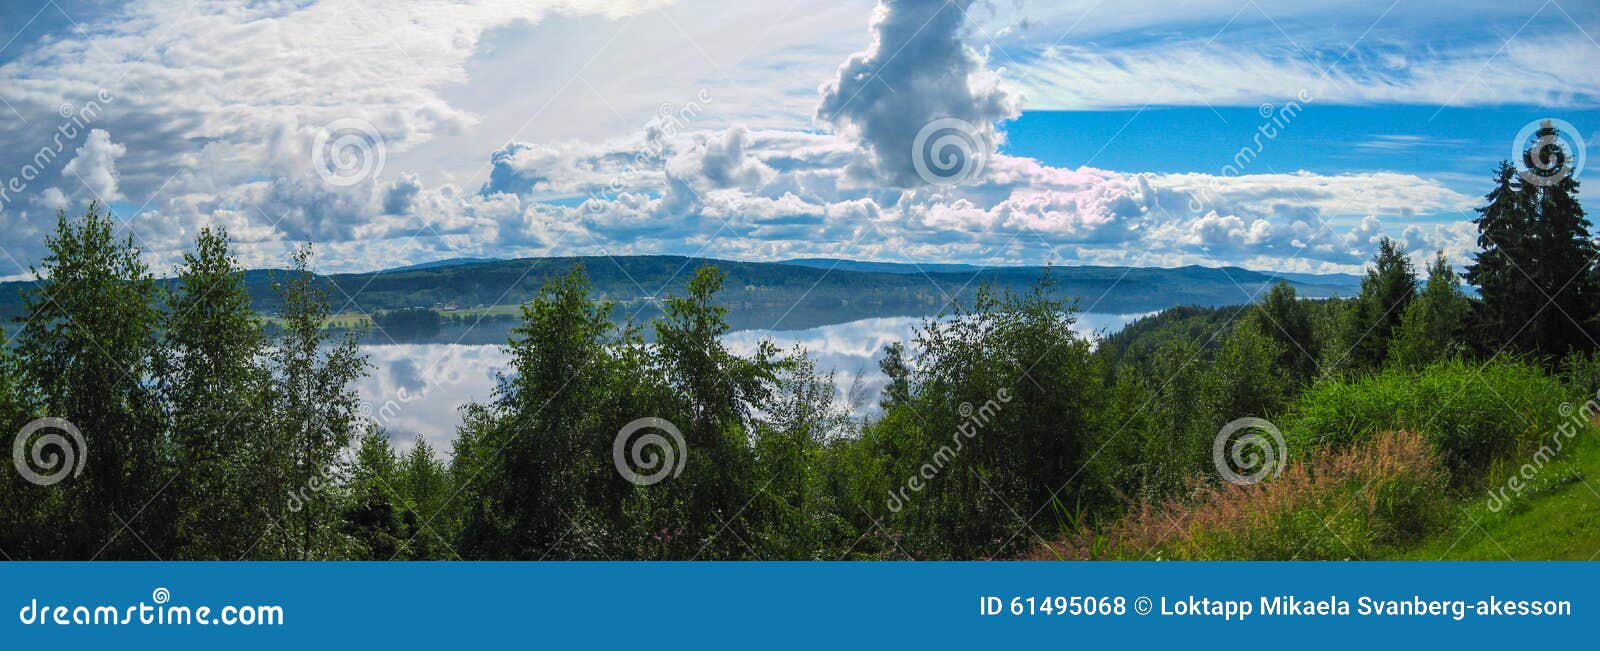 lake panorama dalarna, sweden